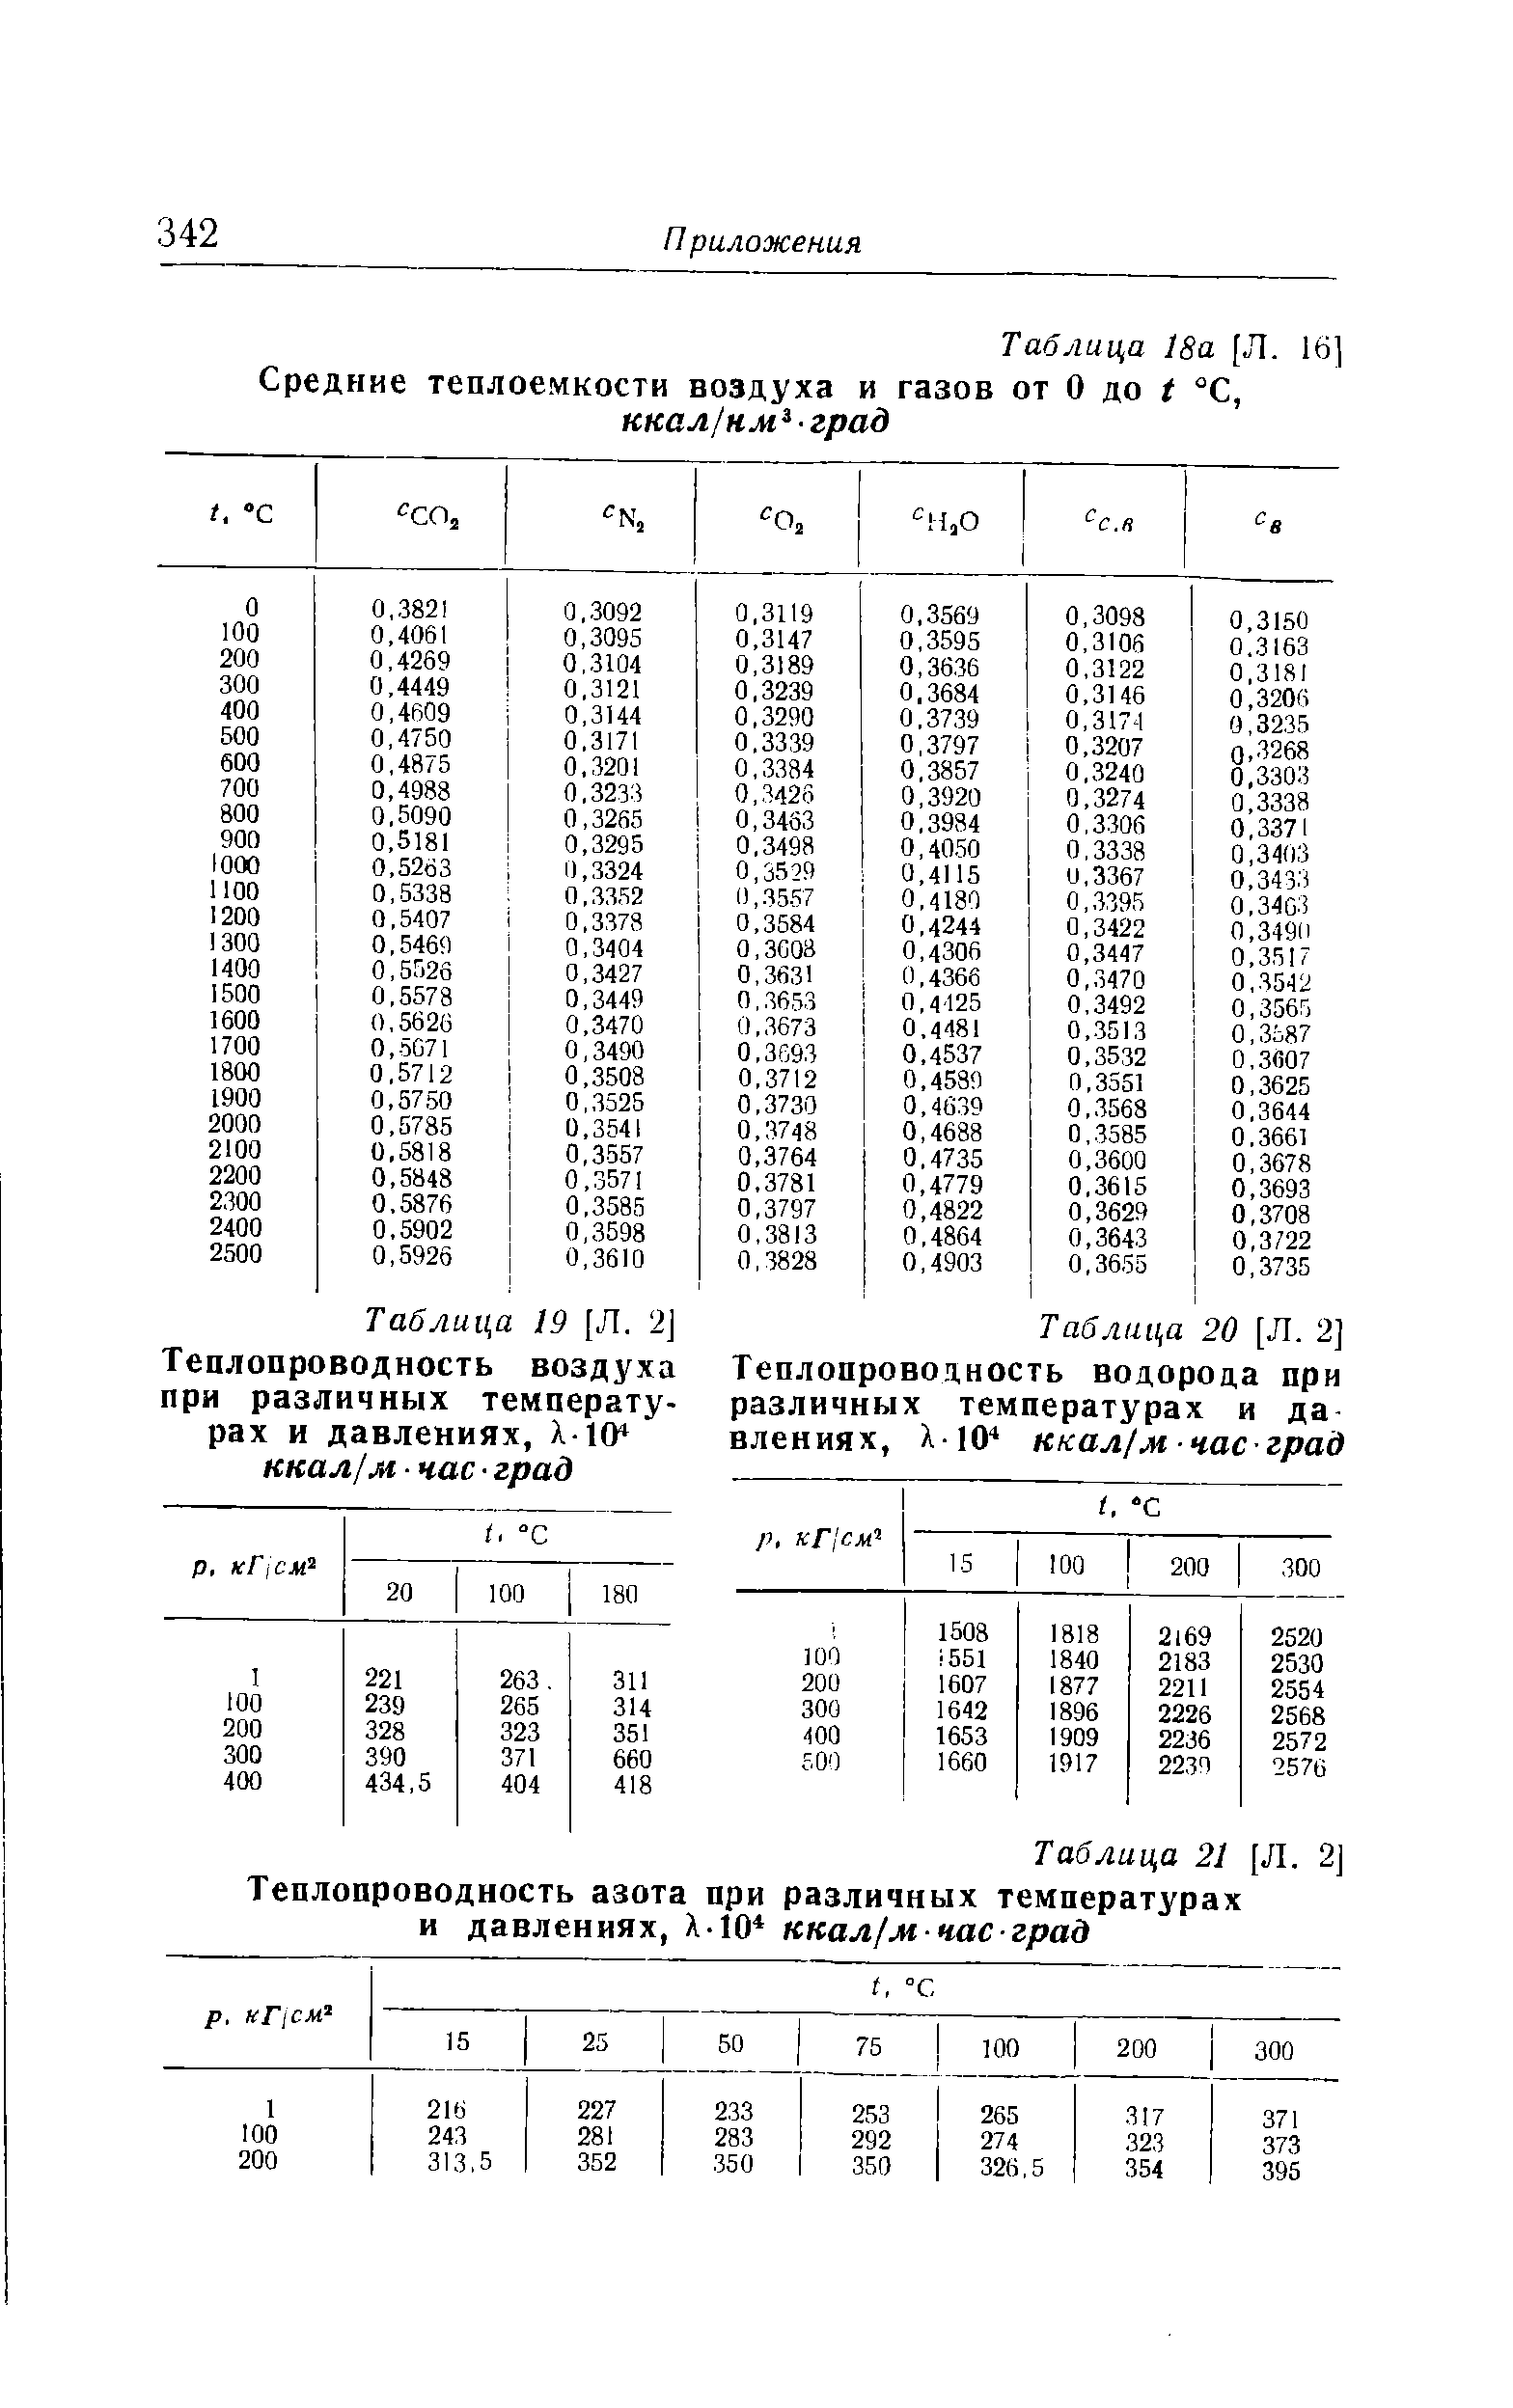 Таблица 21 [Л. 2] Теплопроводность азота при различных температурах и давлениях, Х-10 ккал/м час град
